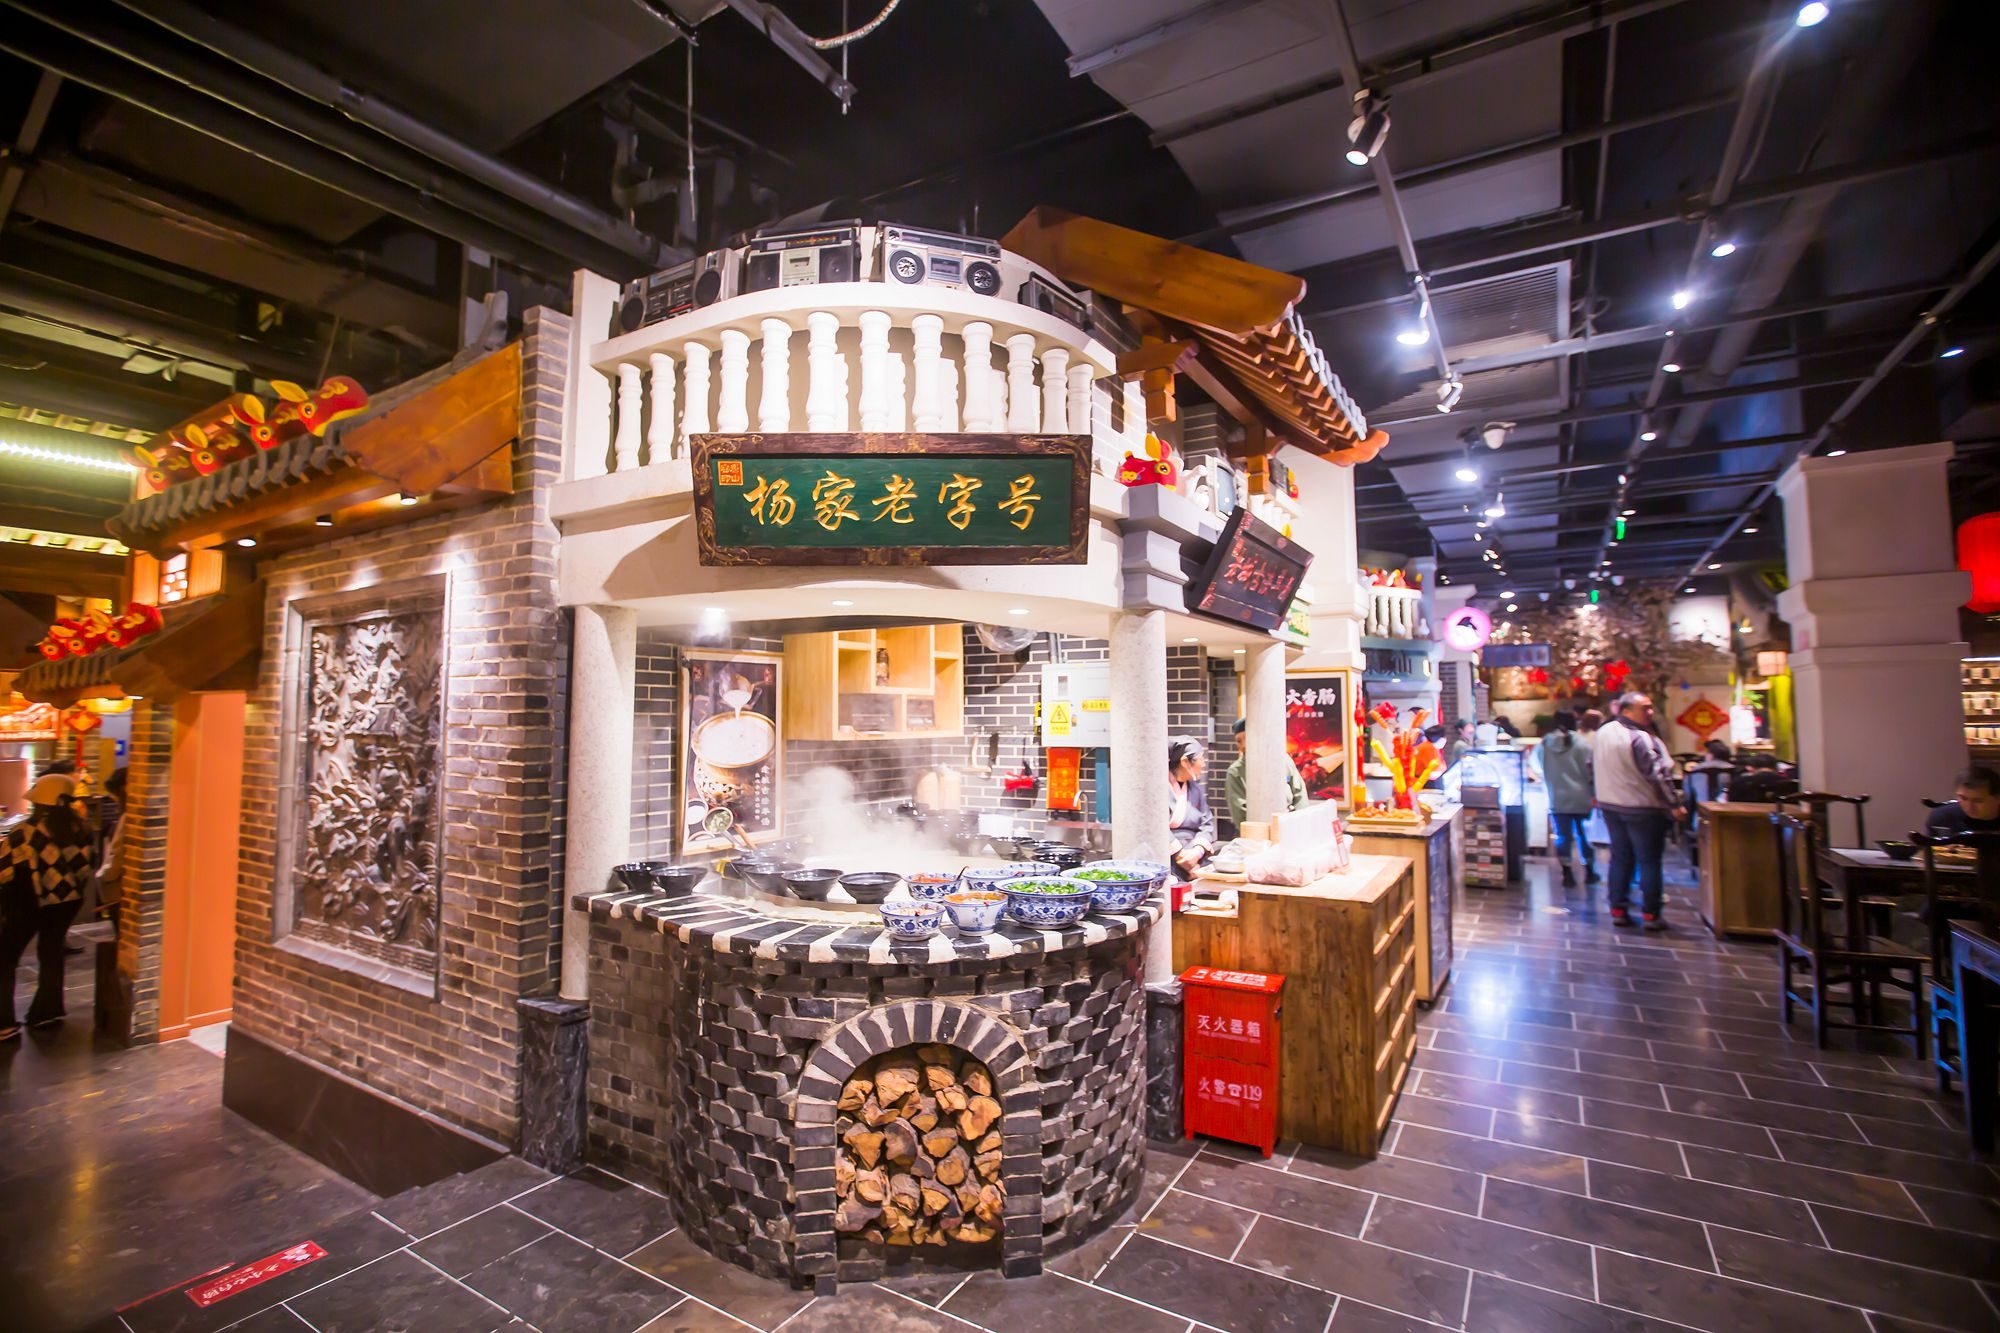 唐山有一座饮食文化博物馆,好吃好玩还好逛,吸引了众多游客前来